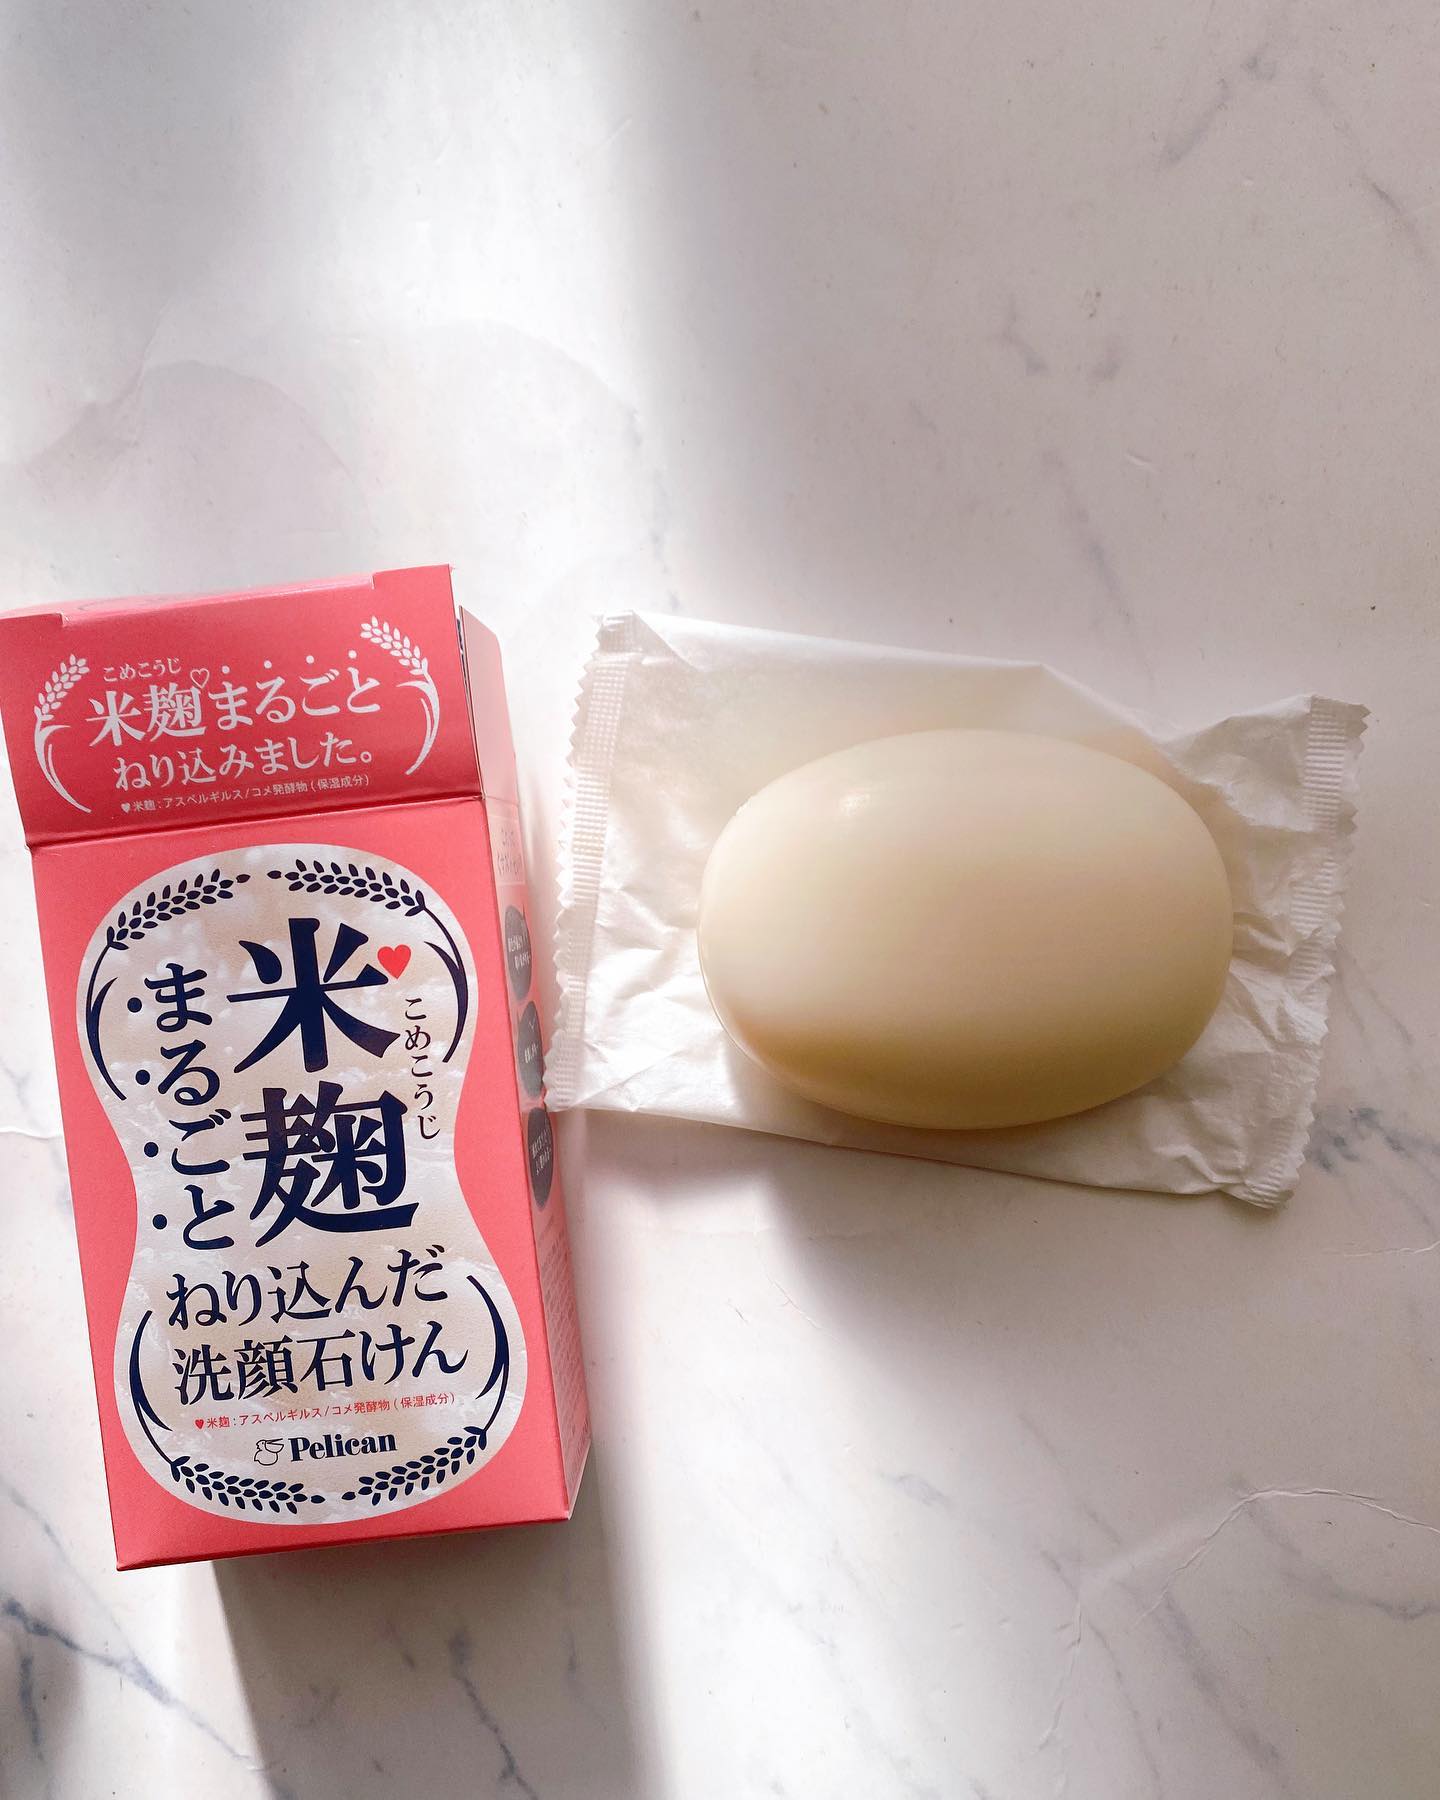 口コミ投稿：☆★☆★☆★株式会社ペリカン石鹸米麹まるごとねり込んだ洗顔石けんを使用しました。名前…